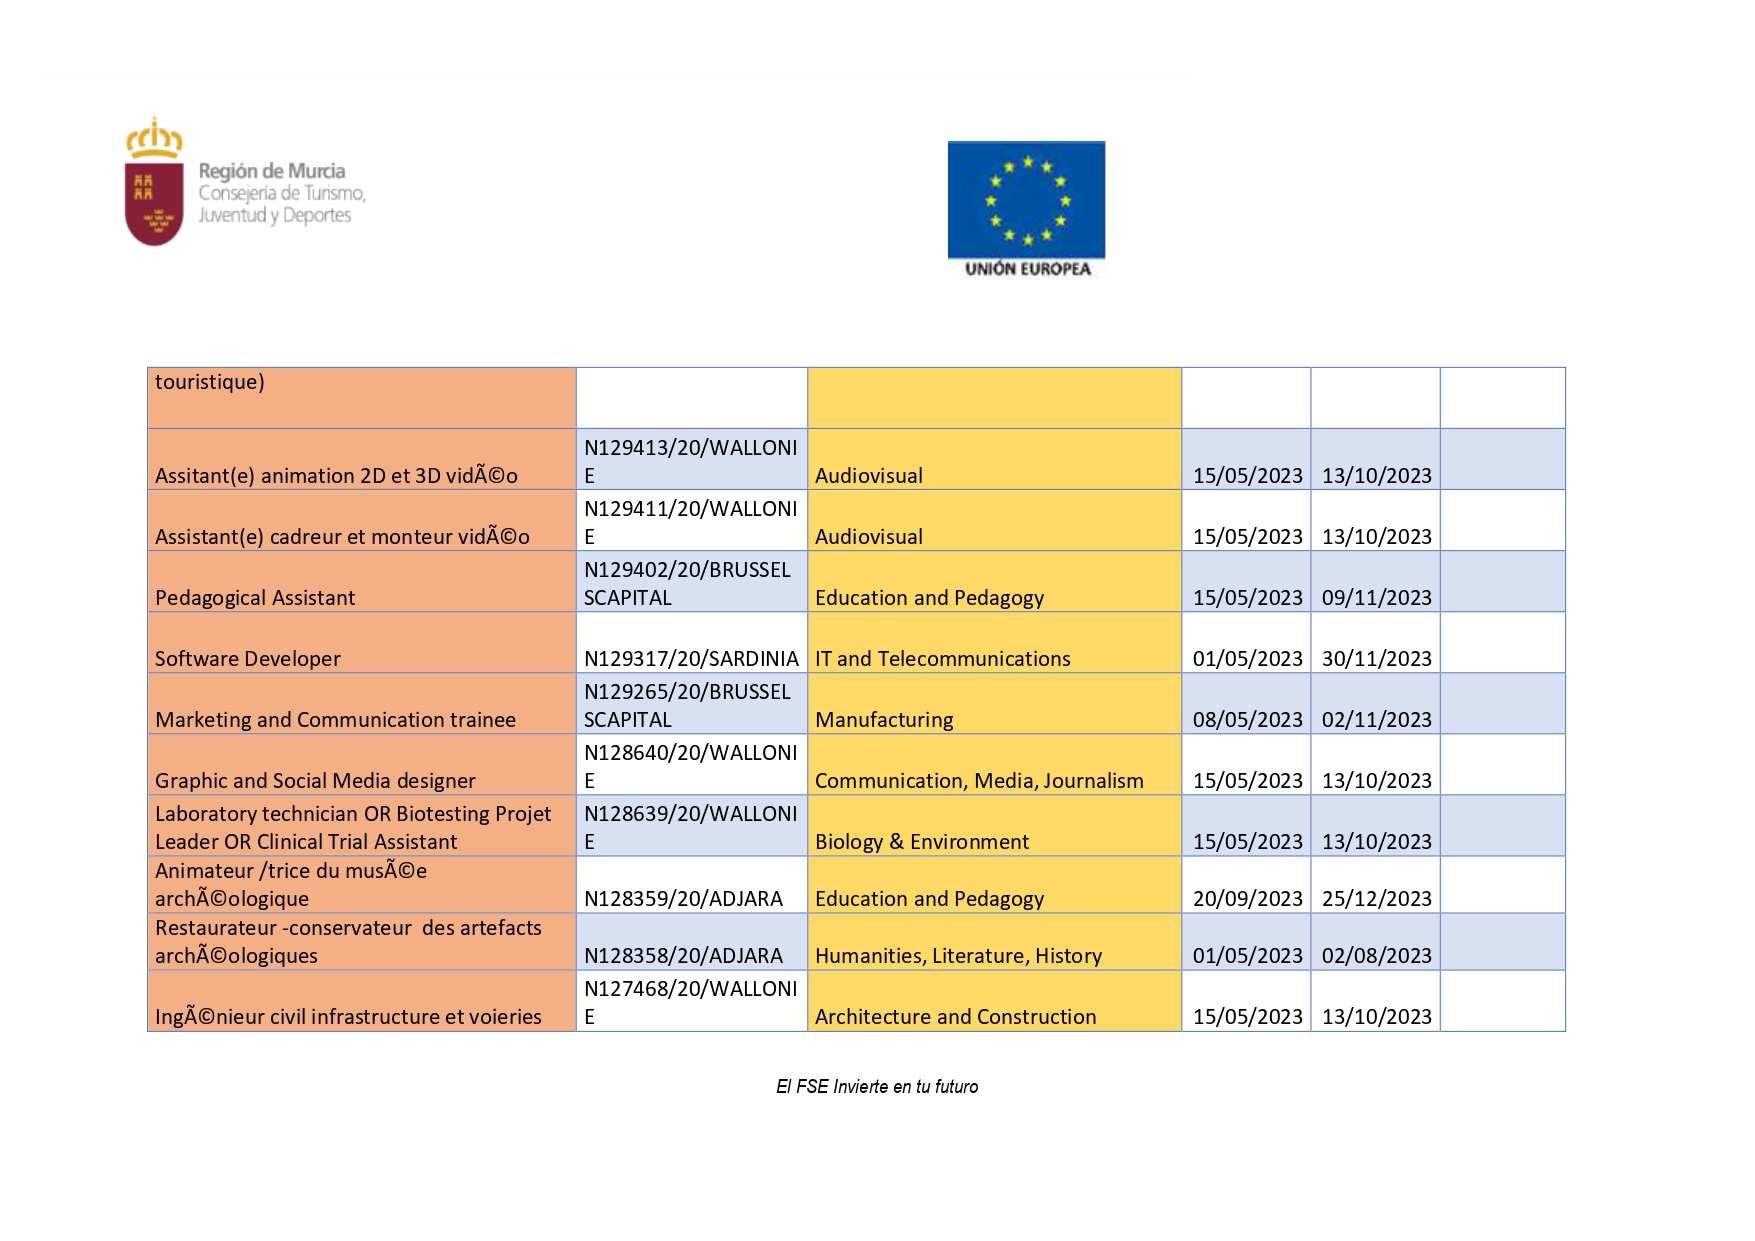 PROGRAMA DE PRÁCTICAS LABORALES REMUNERADAS EN EUROPA (Imagen 6)